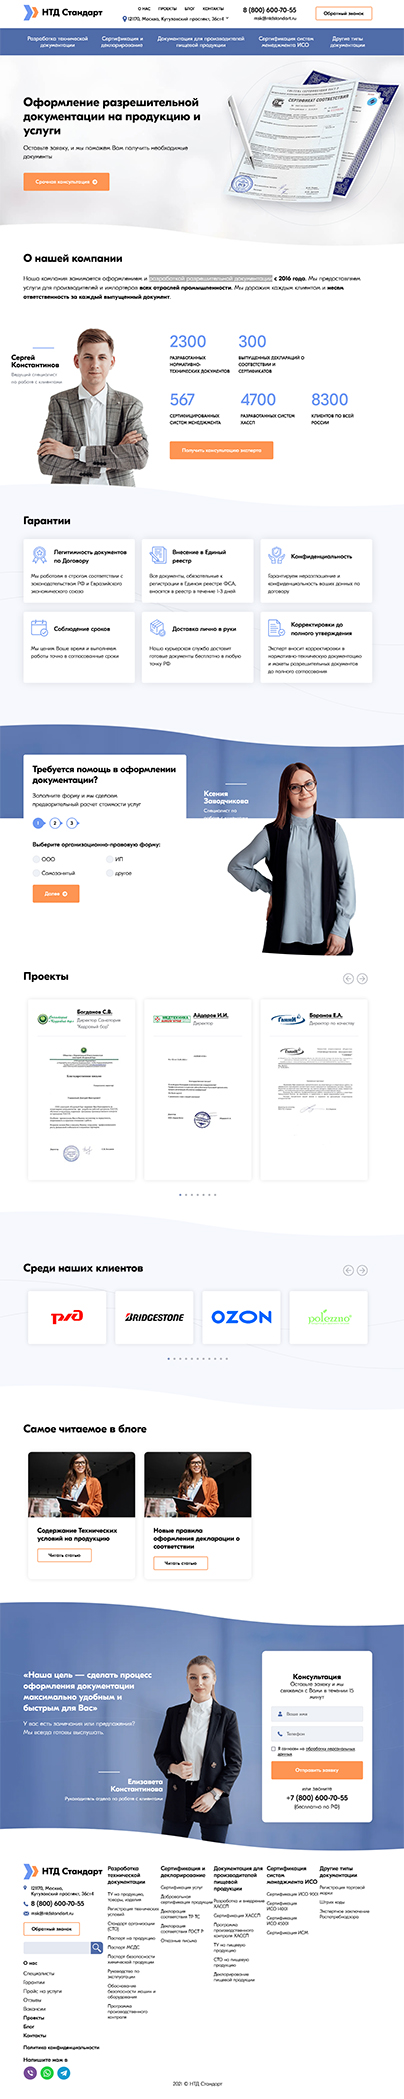 Дизайн макет проекта: Создание сайта для компании НТД Стандарт - портфолио BREVIS - рис. 2